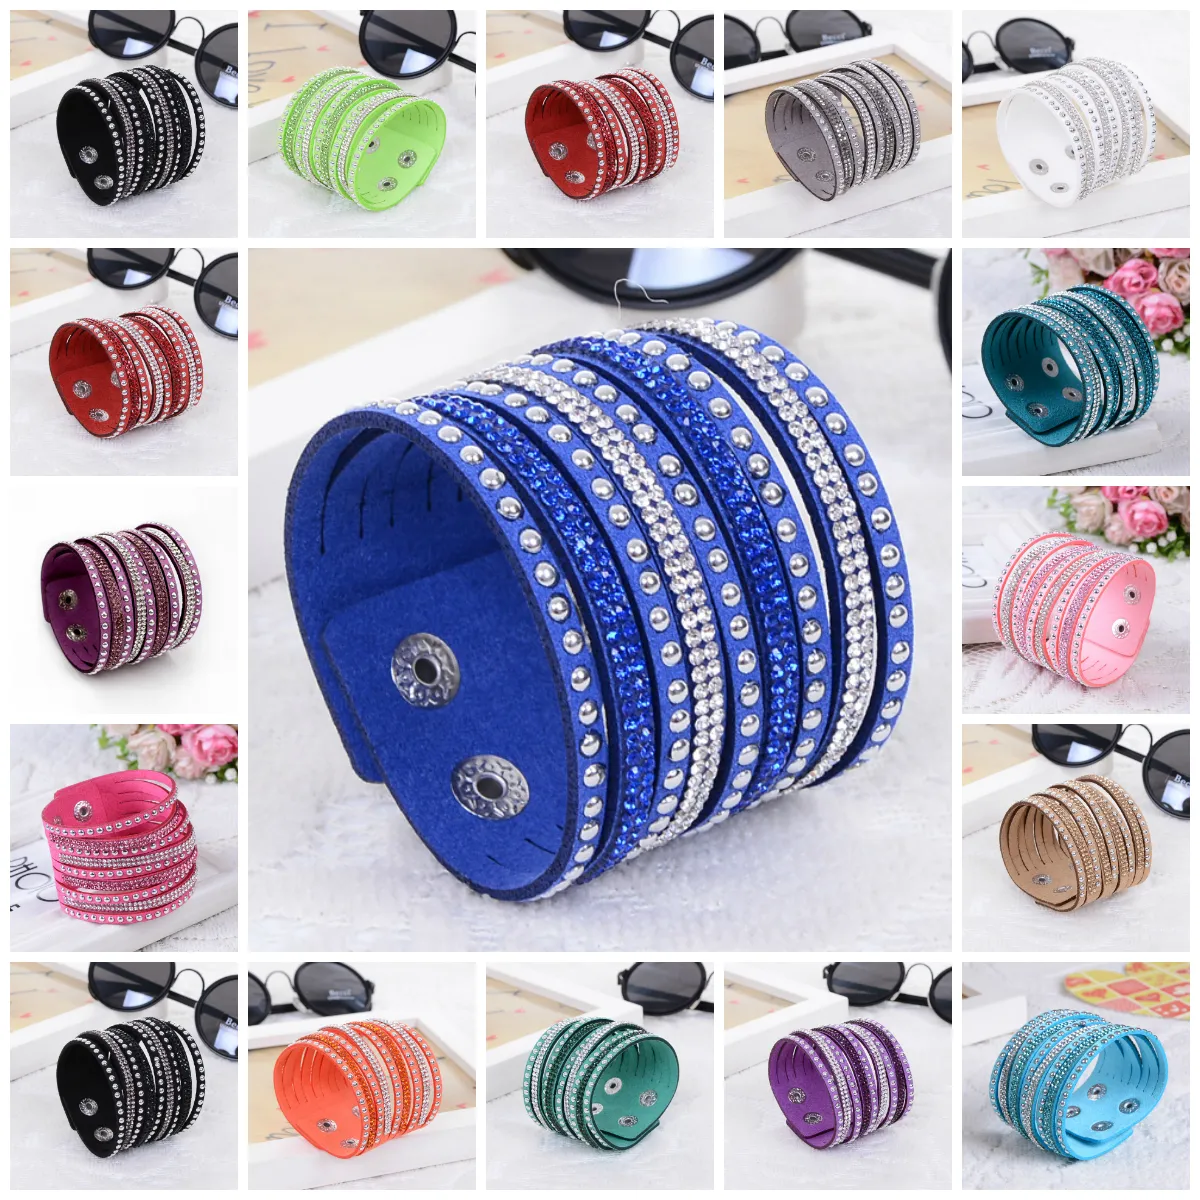 Charm-Armband für Damen, glänzendes Damen-Armband aus mehrschichtigem Leder, Strass-Kristall-Armband, Knöpfe, weiß/schwarz/blau, Lederarmband